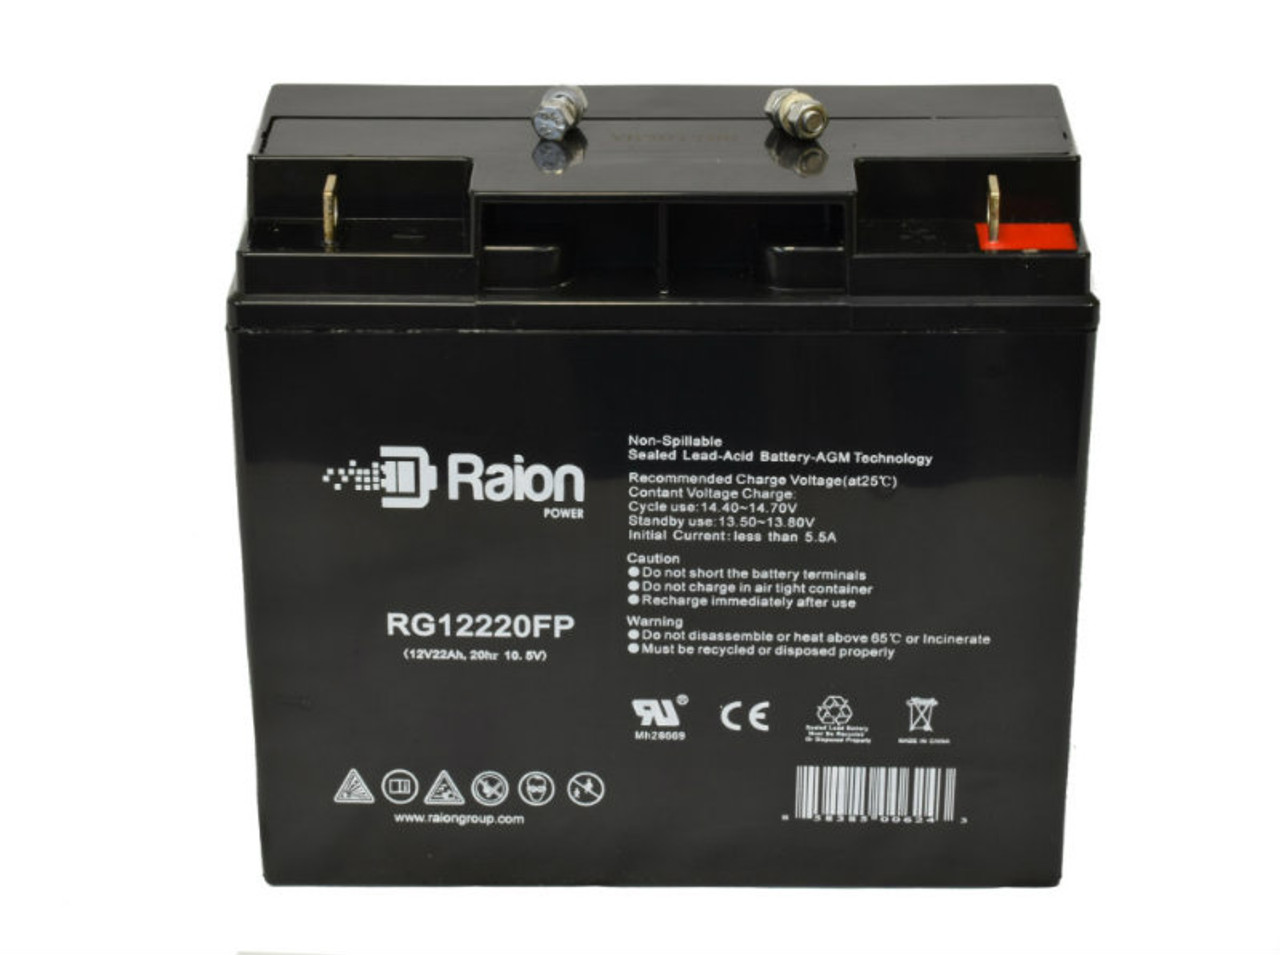 Raion Power RG12220FP 12V 22Ah Lead Acid Battery for Stanley J509 500 Instant 1000 Peak Amp